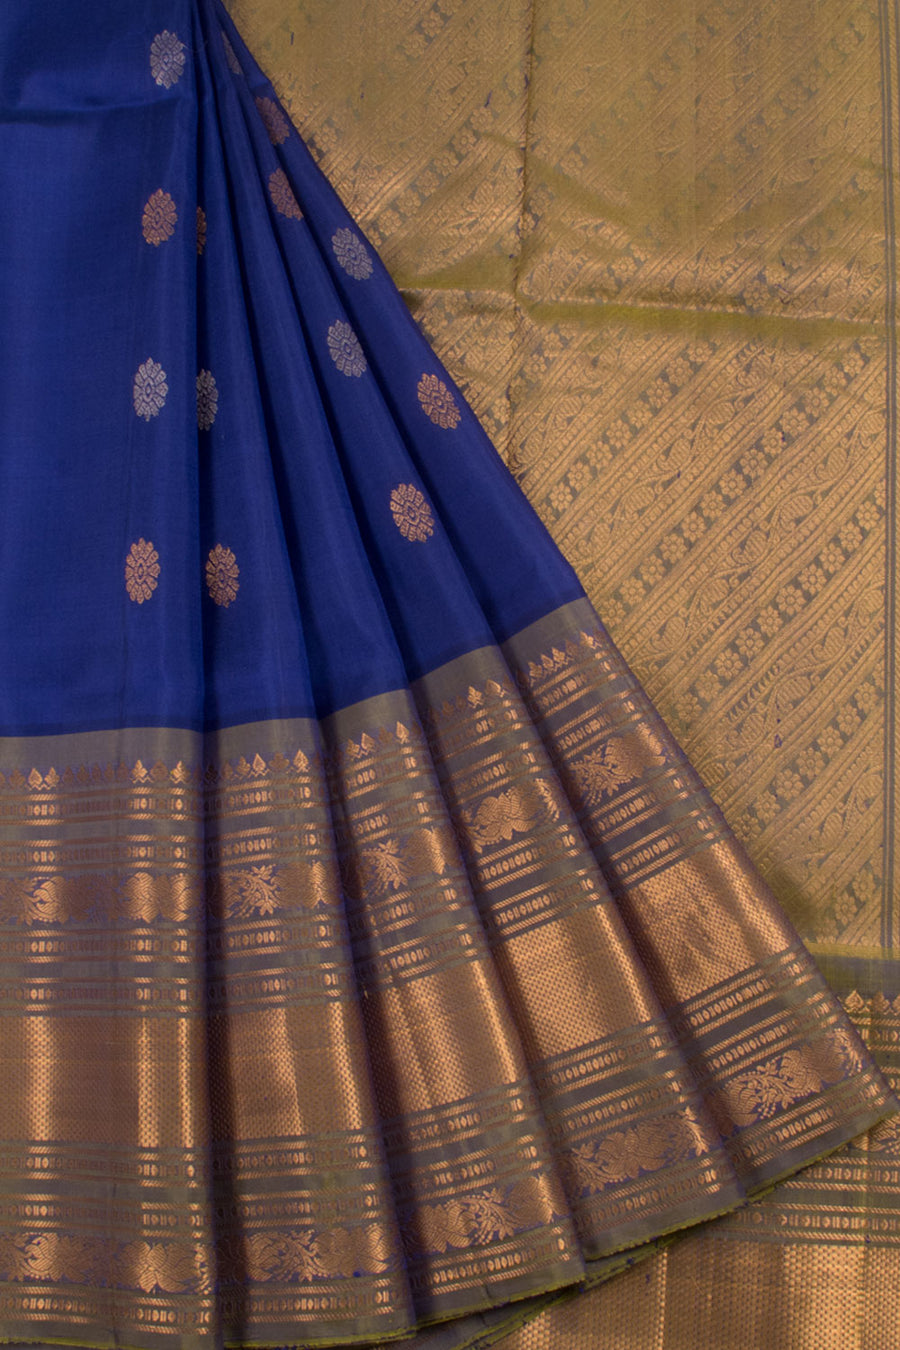 Handloom Gadwal Silk Saree with Gold, Silver Zari Floral Motifs and Zari Border